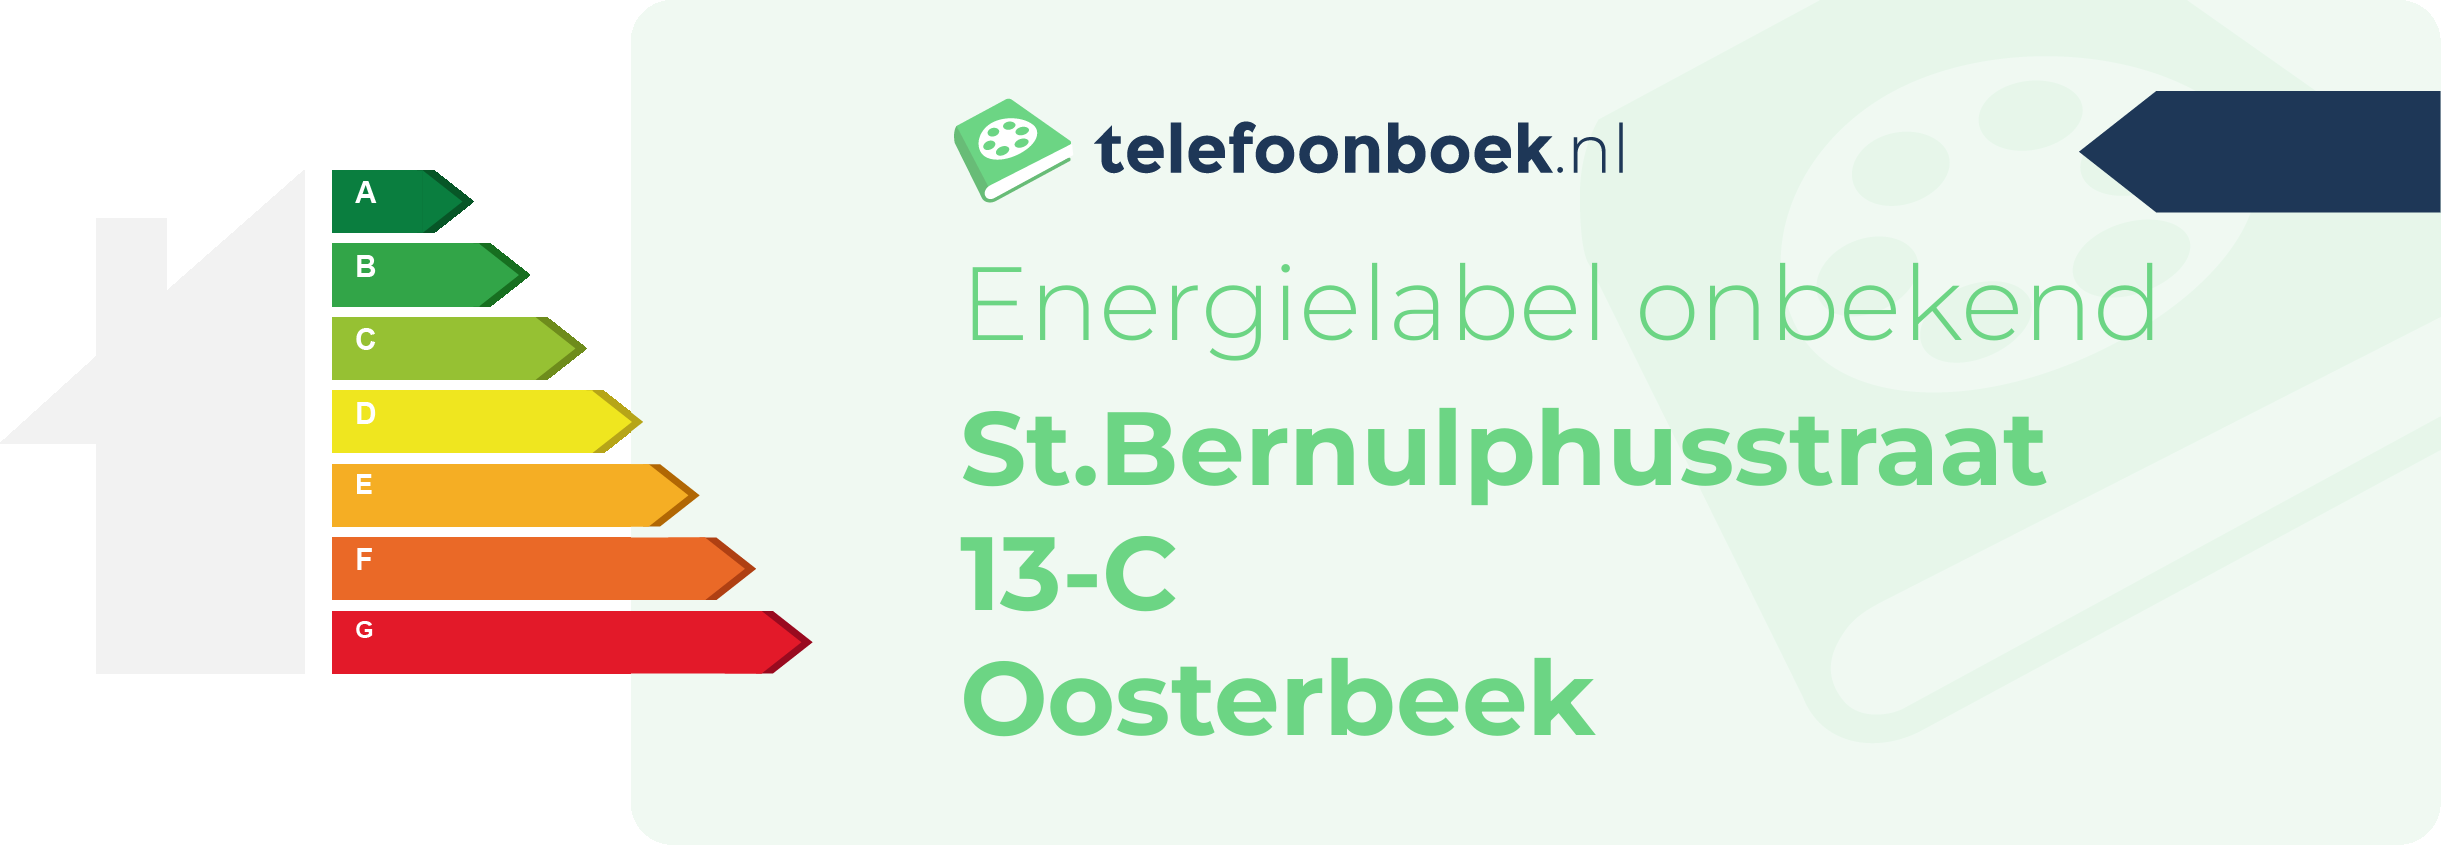 Energielabel St.Bernulphusstraat 13-C Oosterbeek